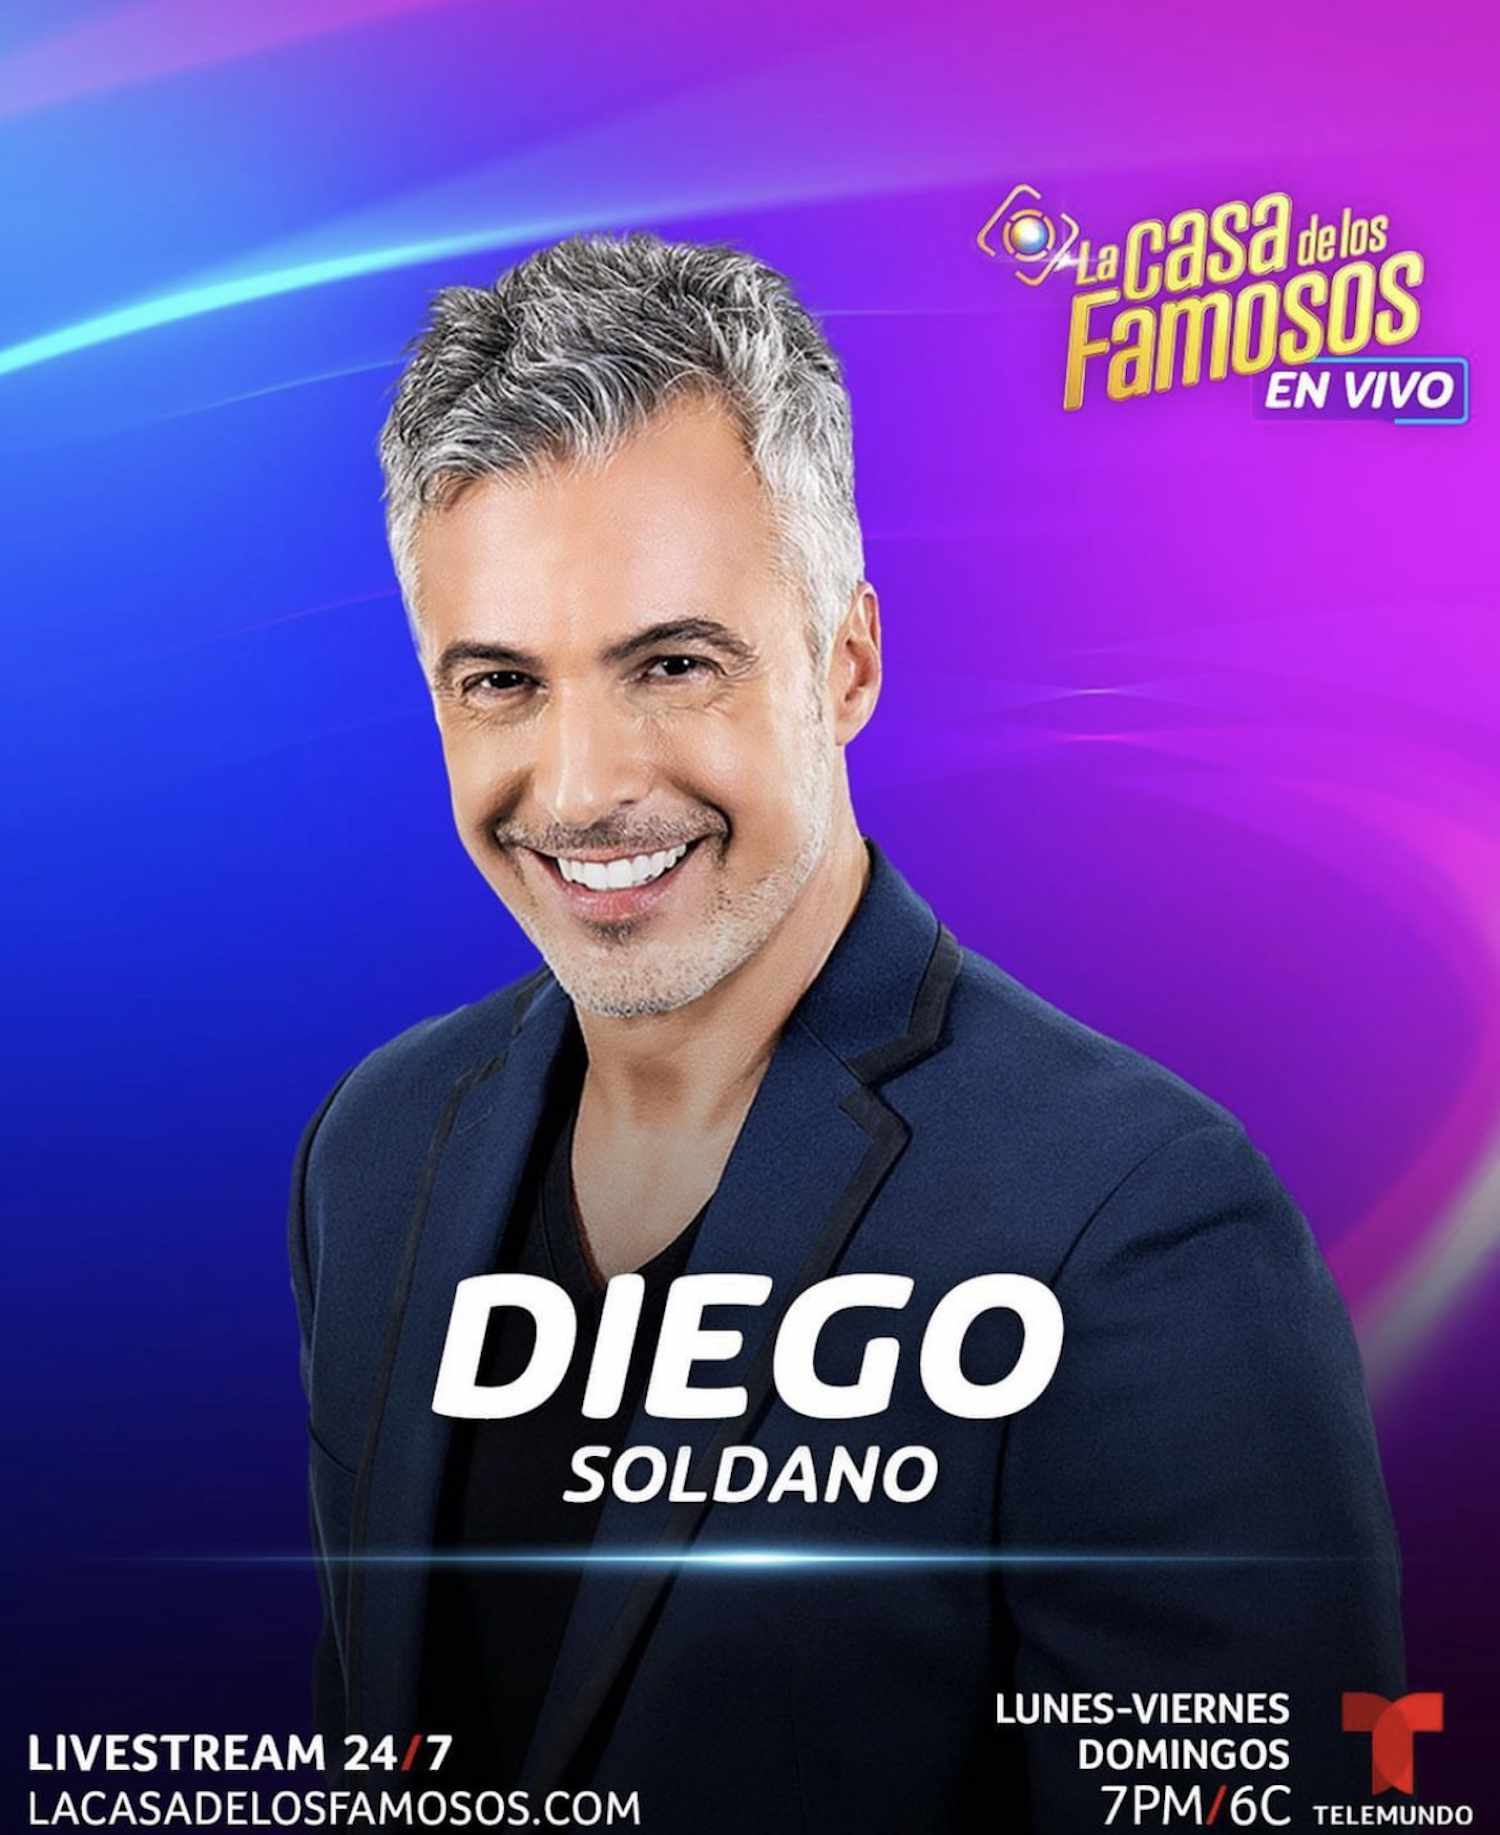 Diego Soldano